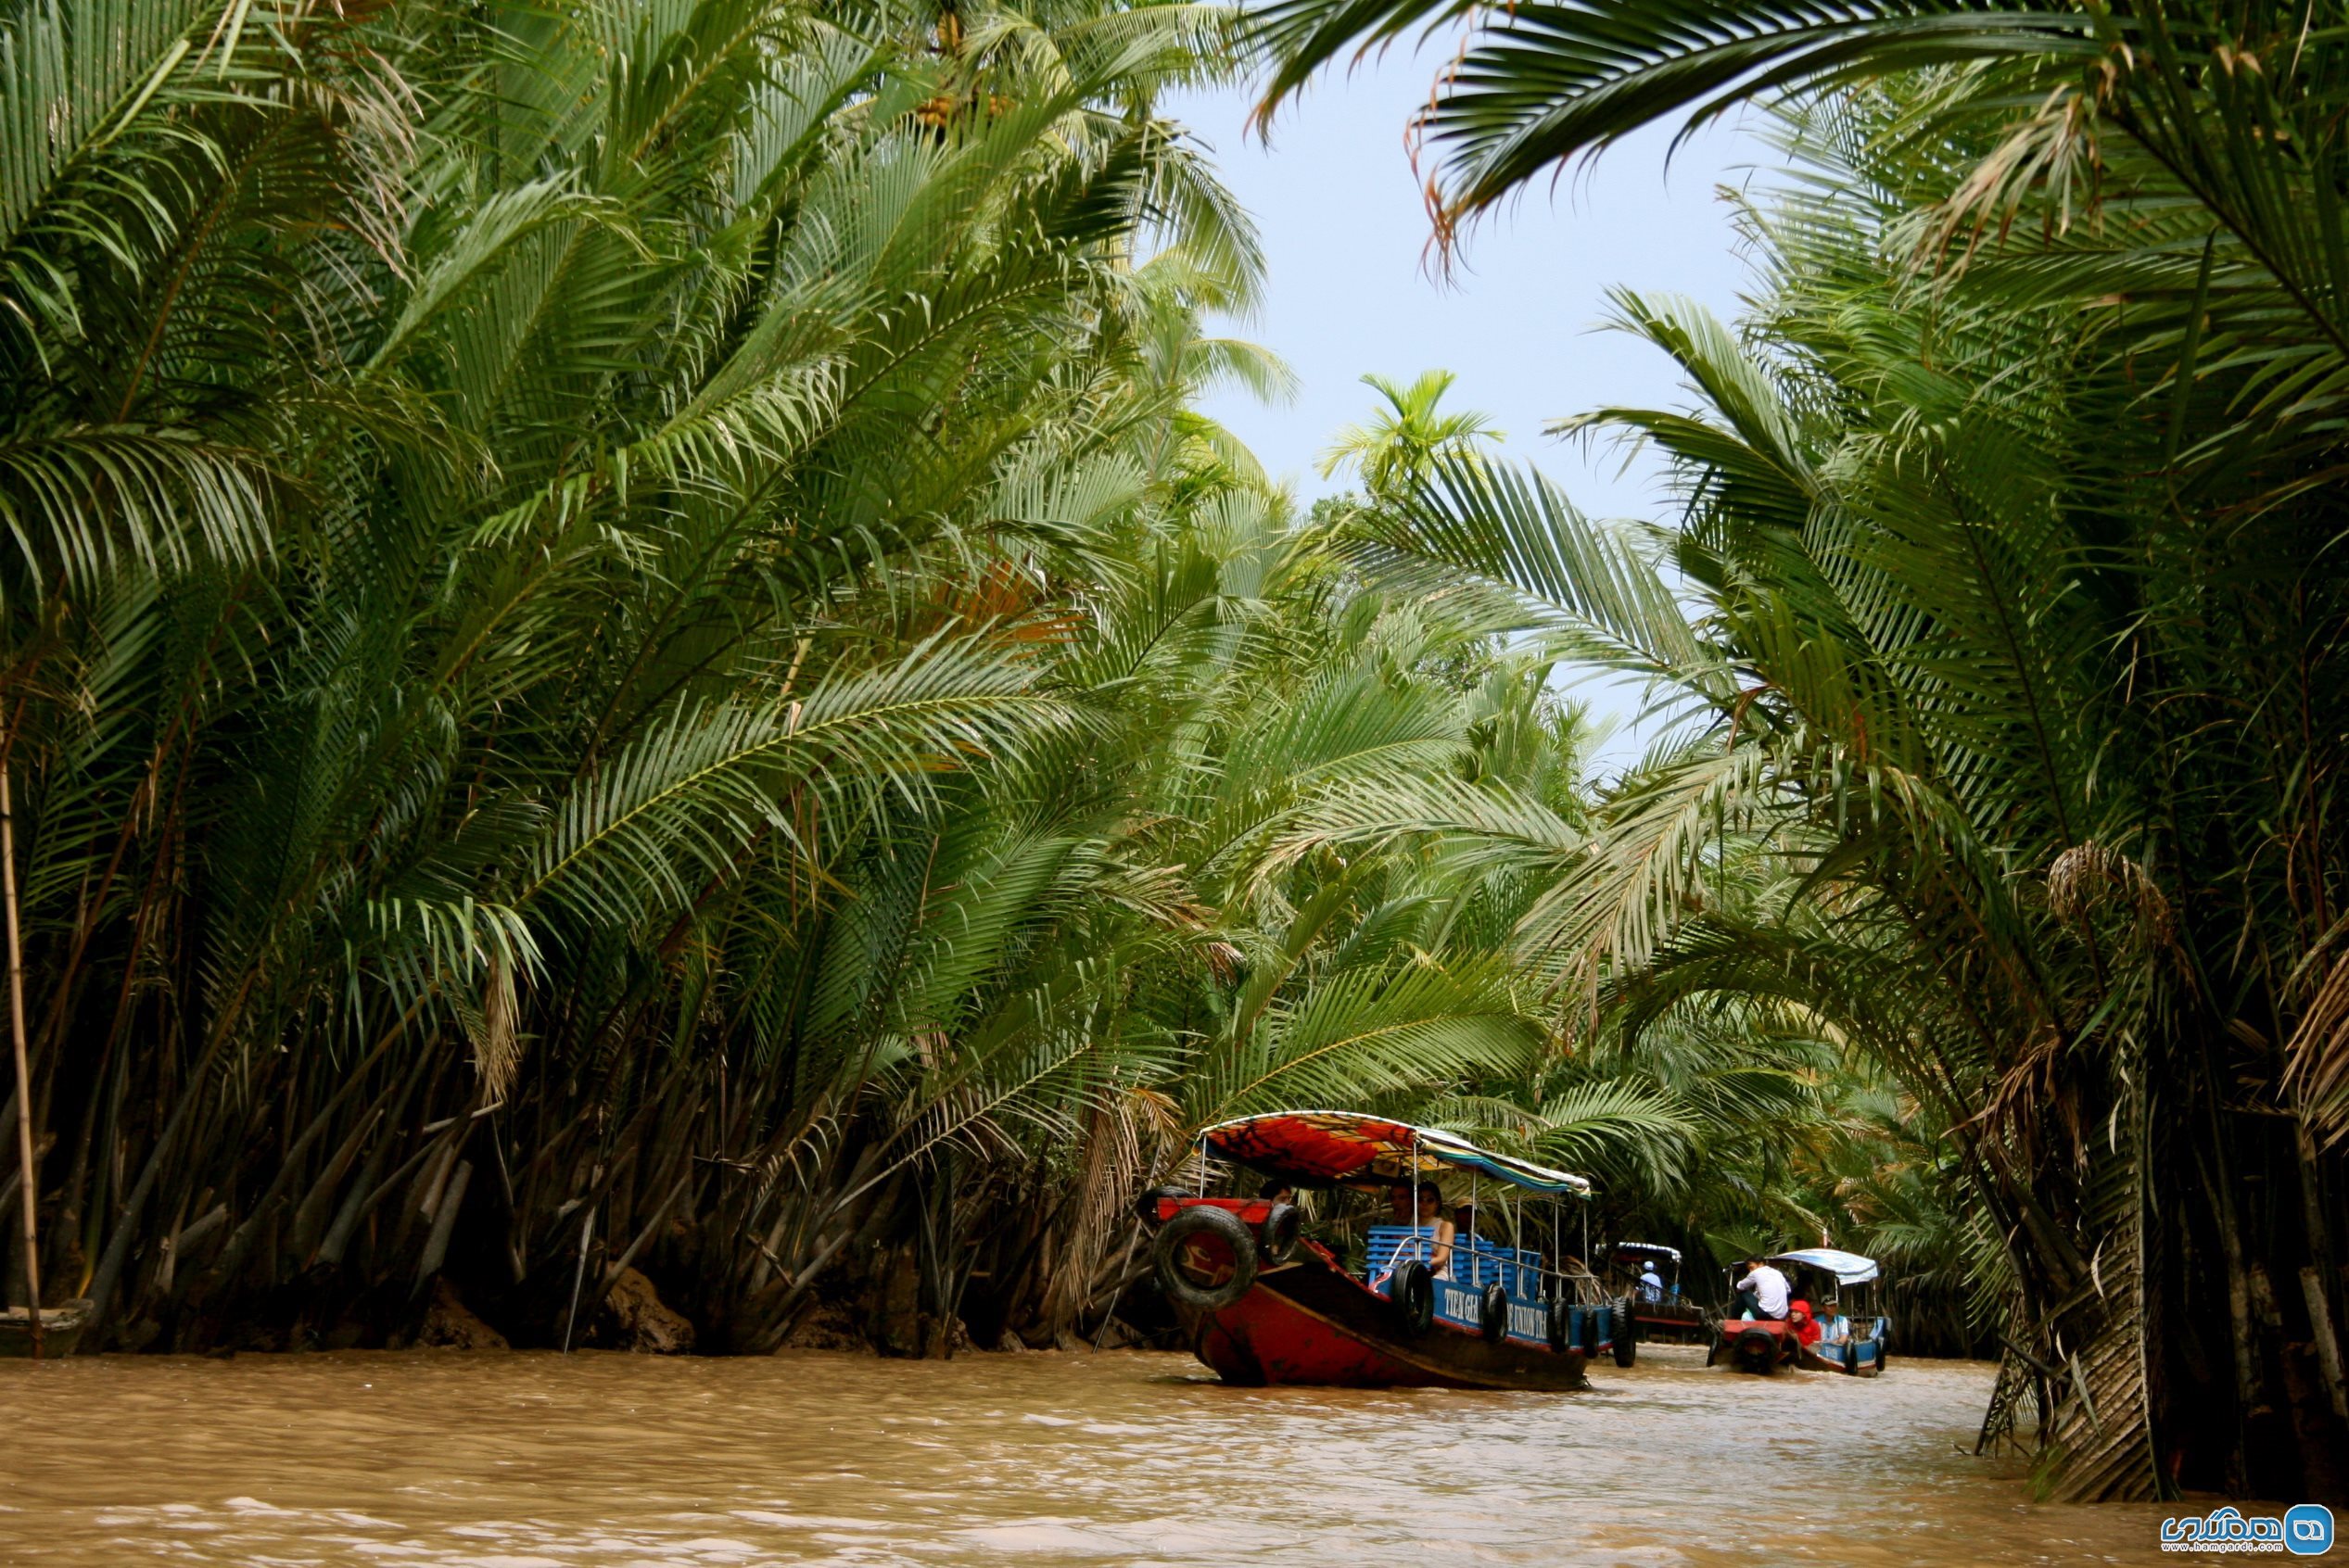  دلتای مکونگ ( Mekong Delta )2